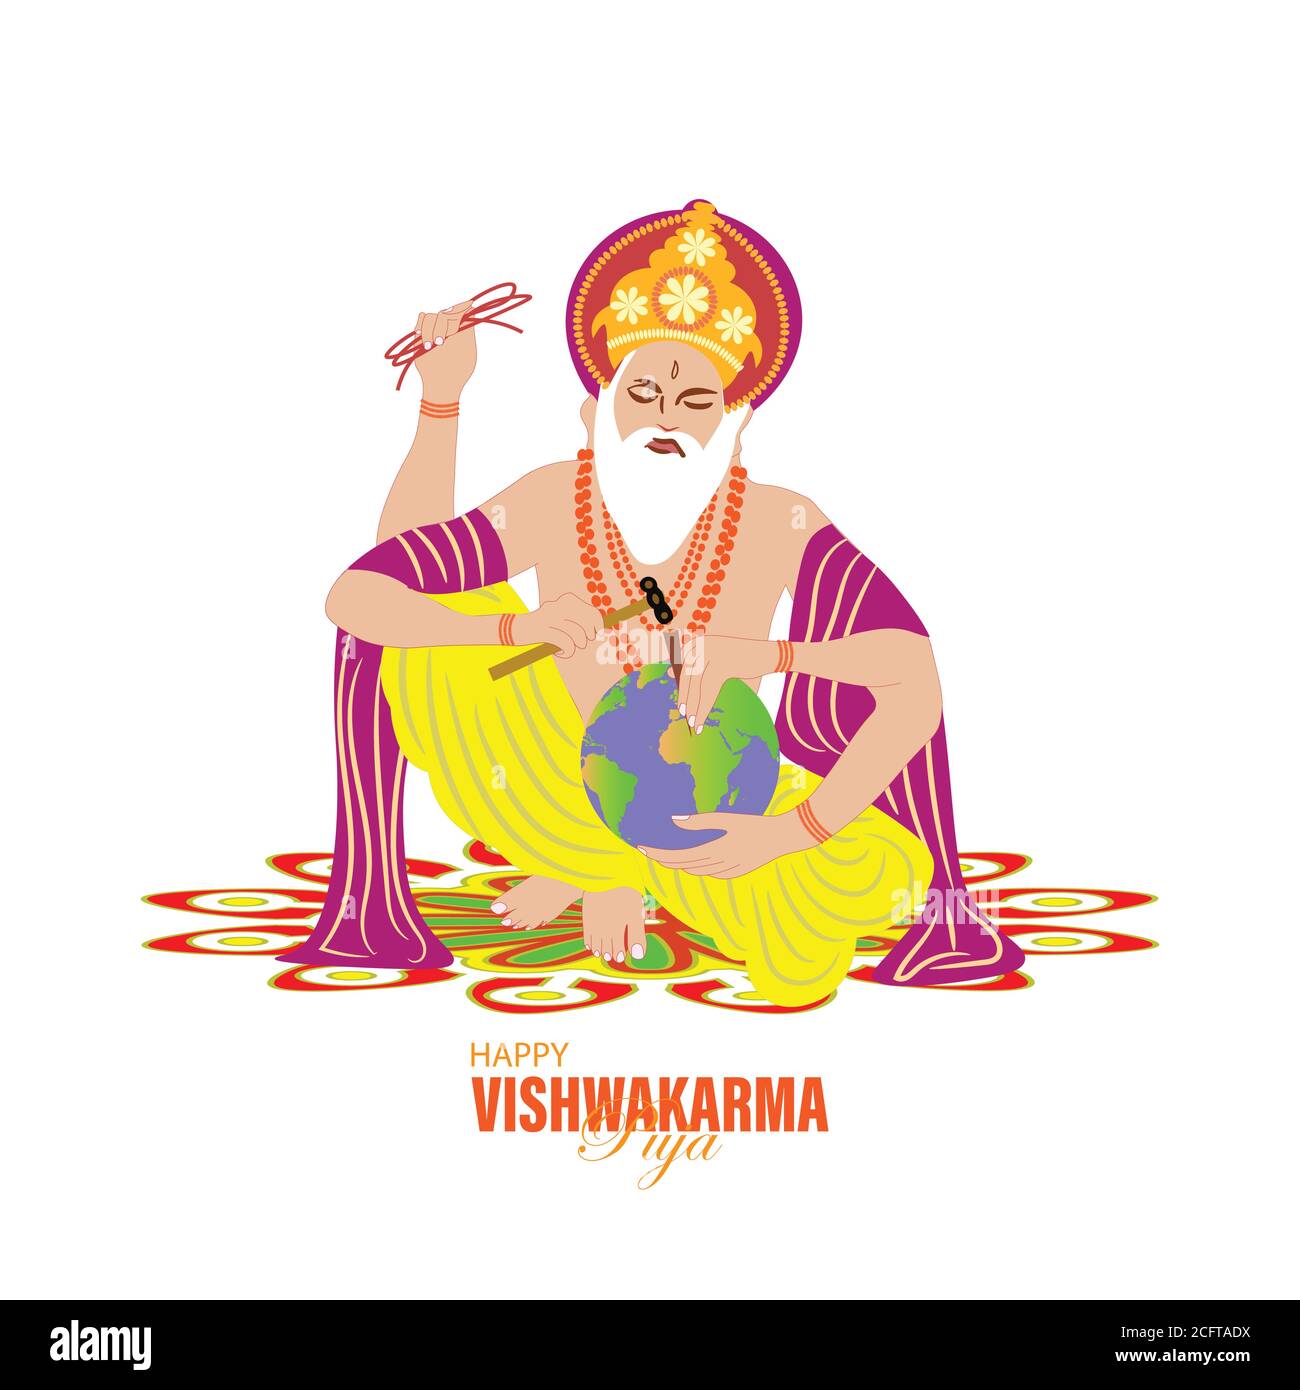 Vishwakarma Dio degli Indù, che si ritiene essere l'architetto dell'universo. Un banner per Vishwakarma Puja. Illustrazione vettoriale. Illustrazione Vettoriale